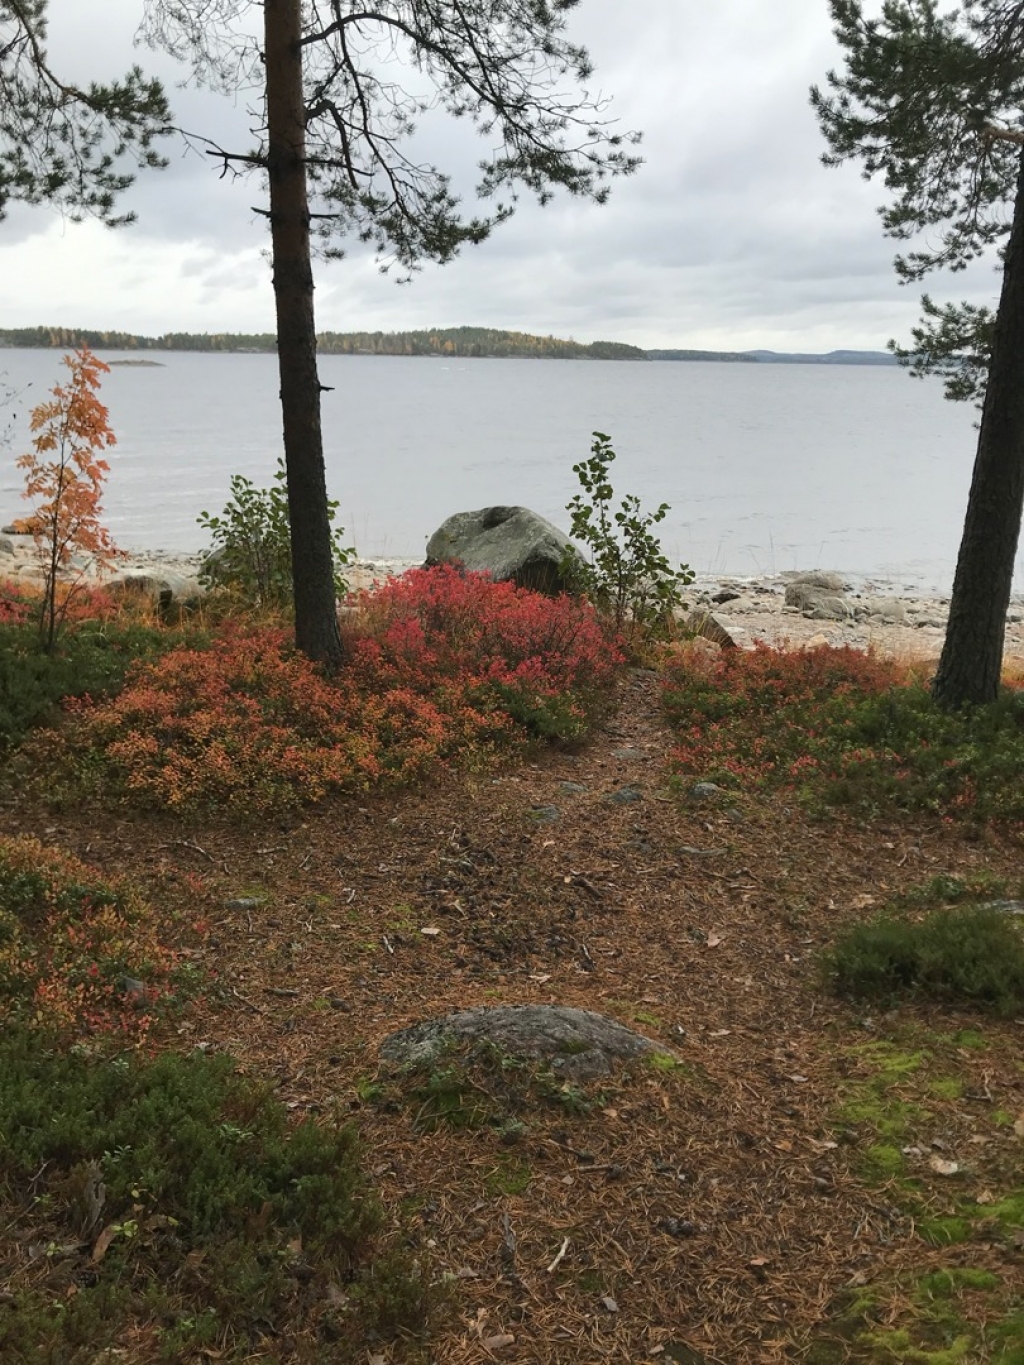 Koli Camping & Caravan Merilänranta